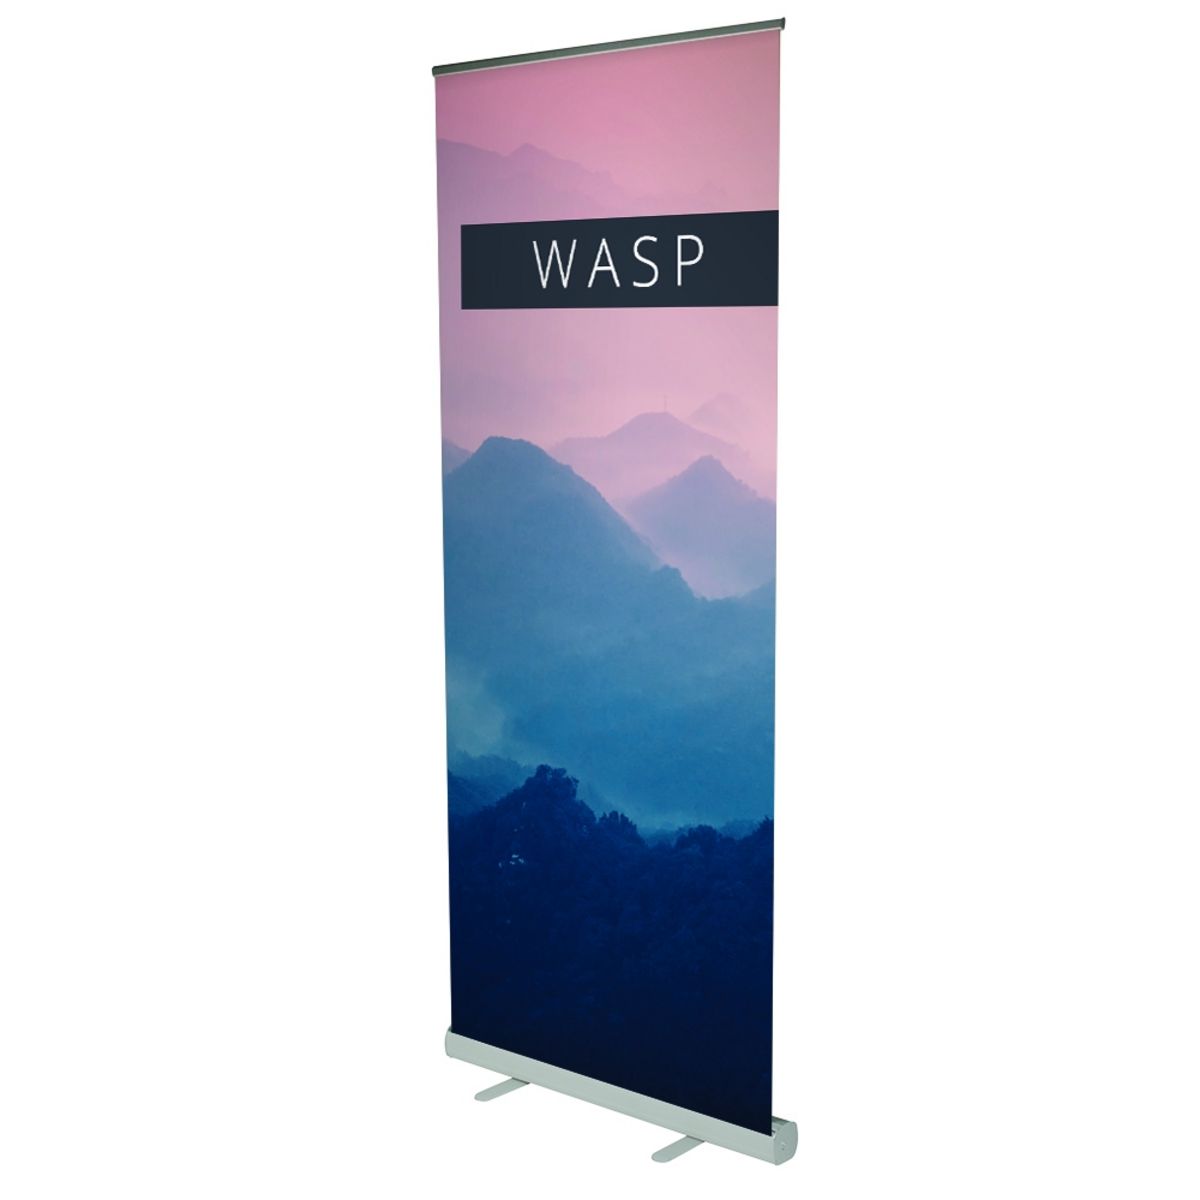 wasp-2-main-80014.jpg